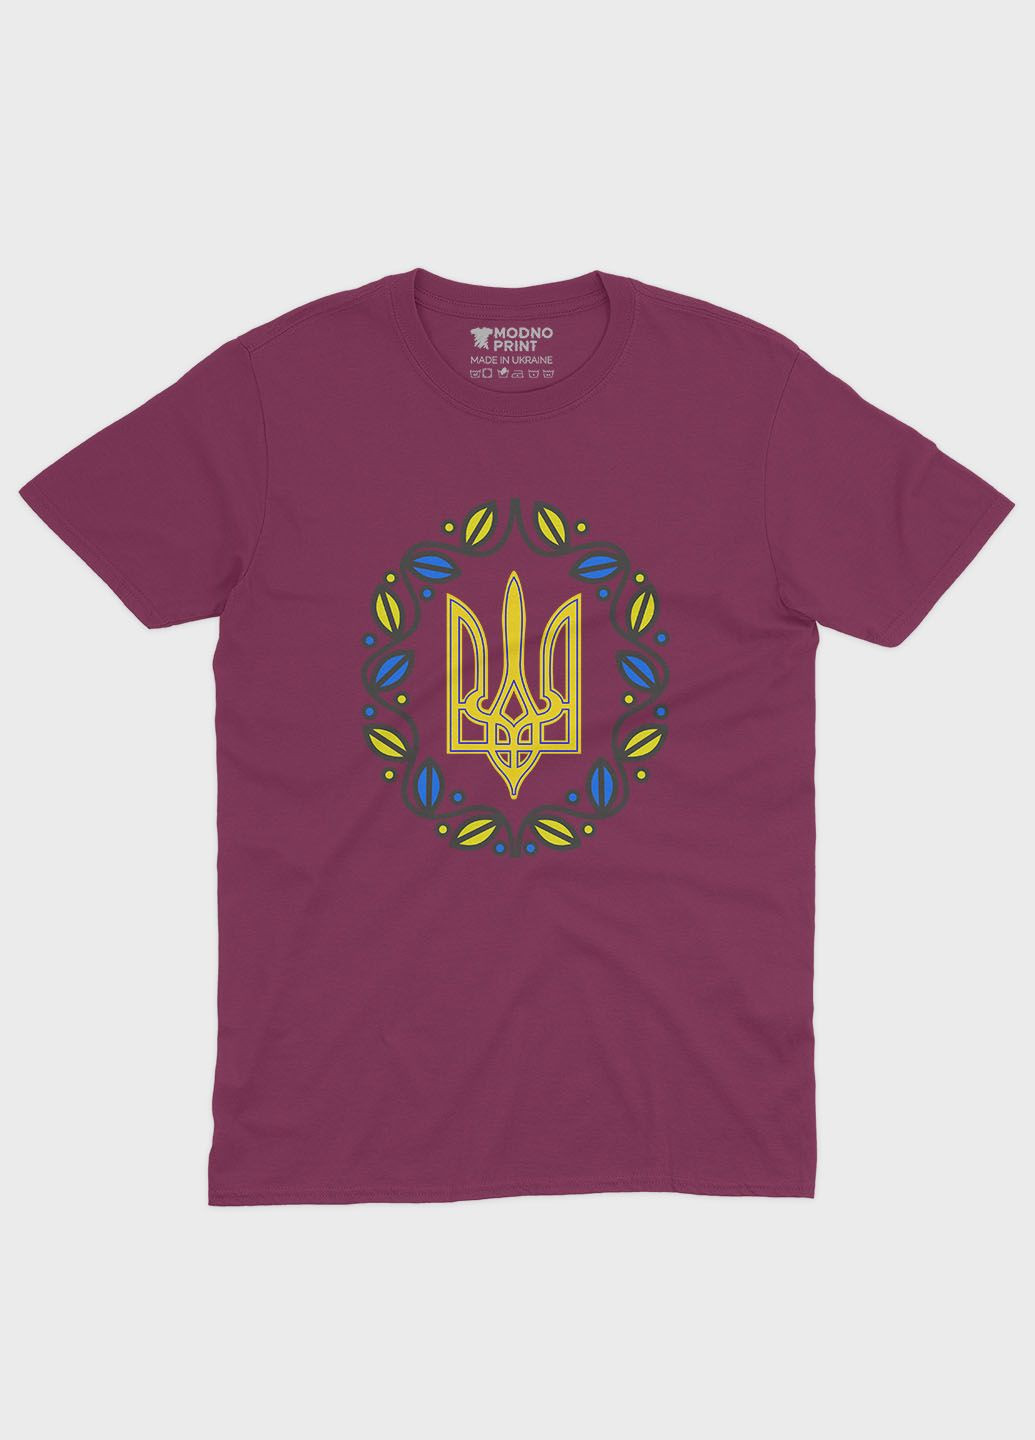 Бордовая мужская футболка с патриотическим принтом гербтризуб (ts001-2-bgr-005-1-052) Modno